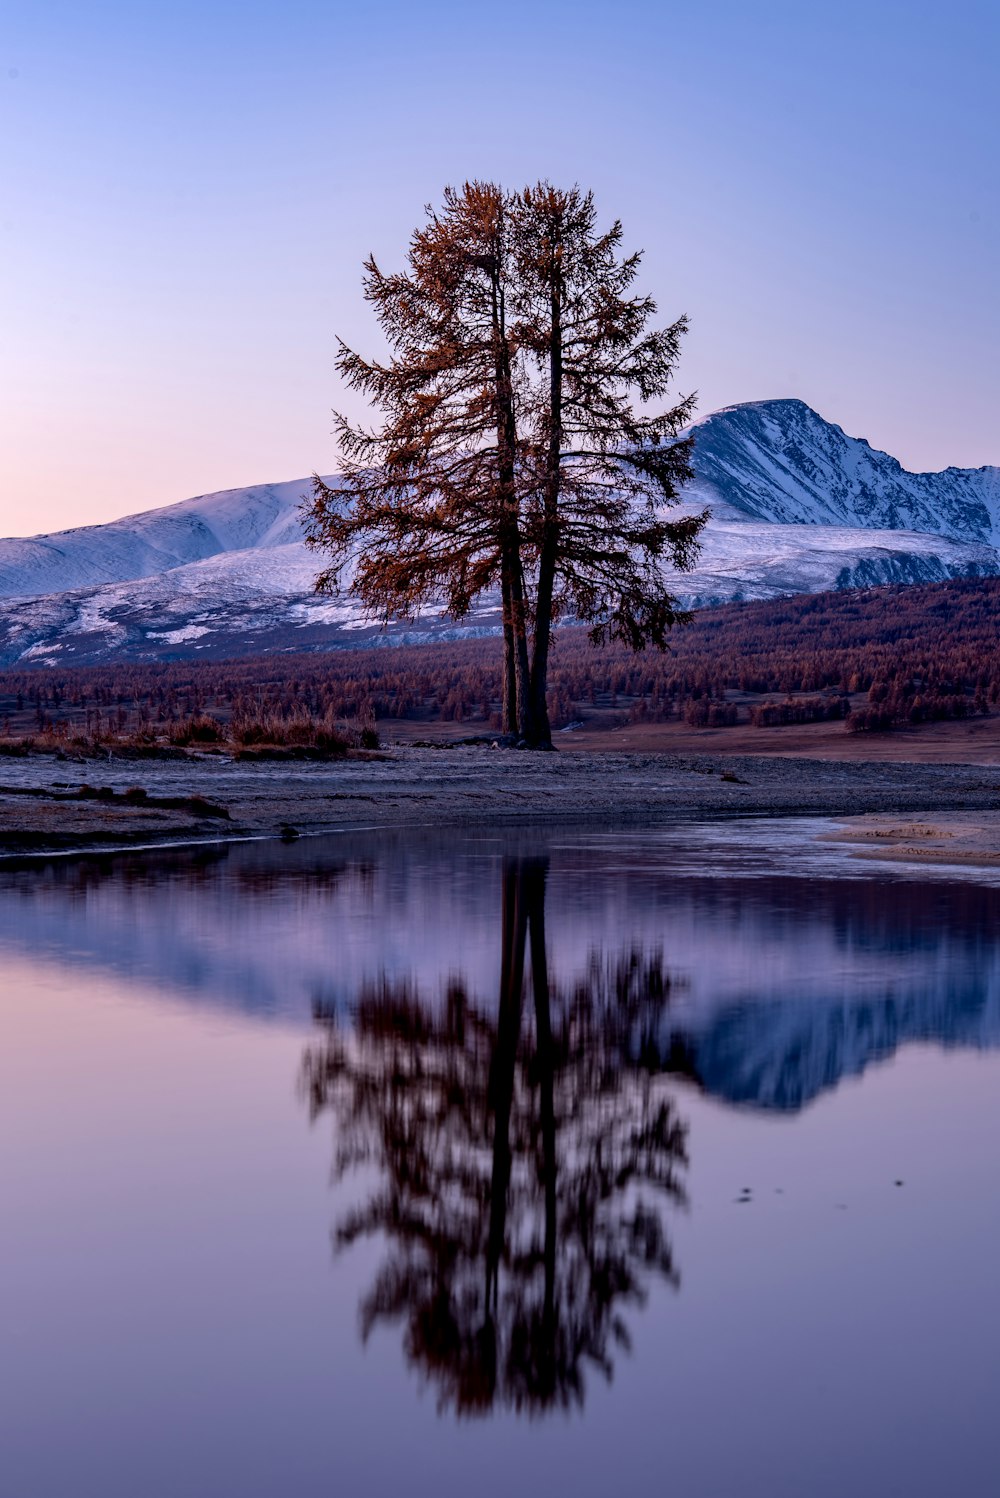 Un árbol solitario se refleja en el agua quieta de un lago